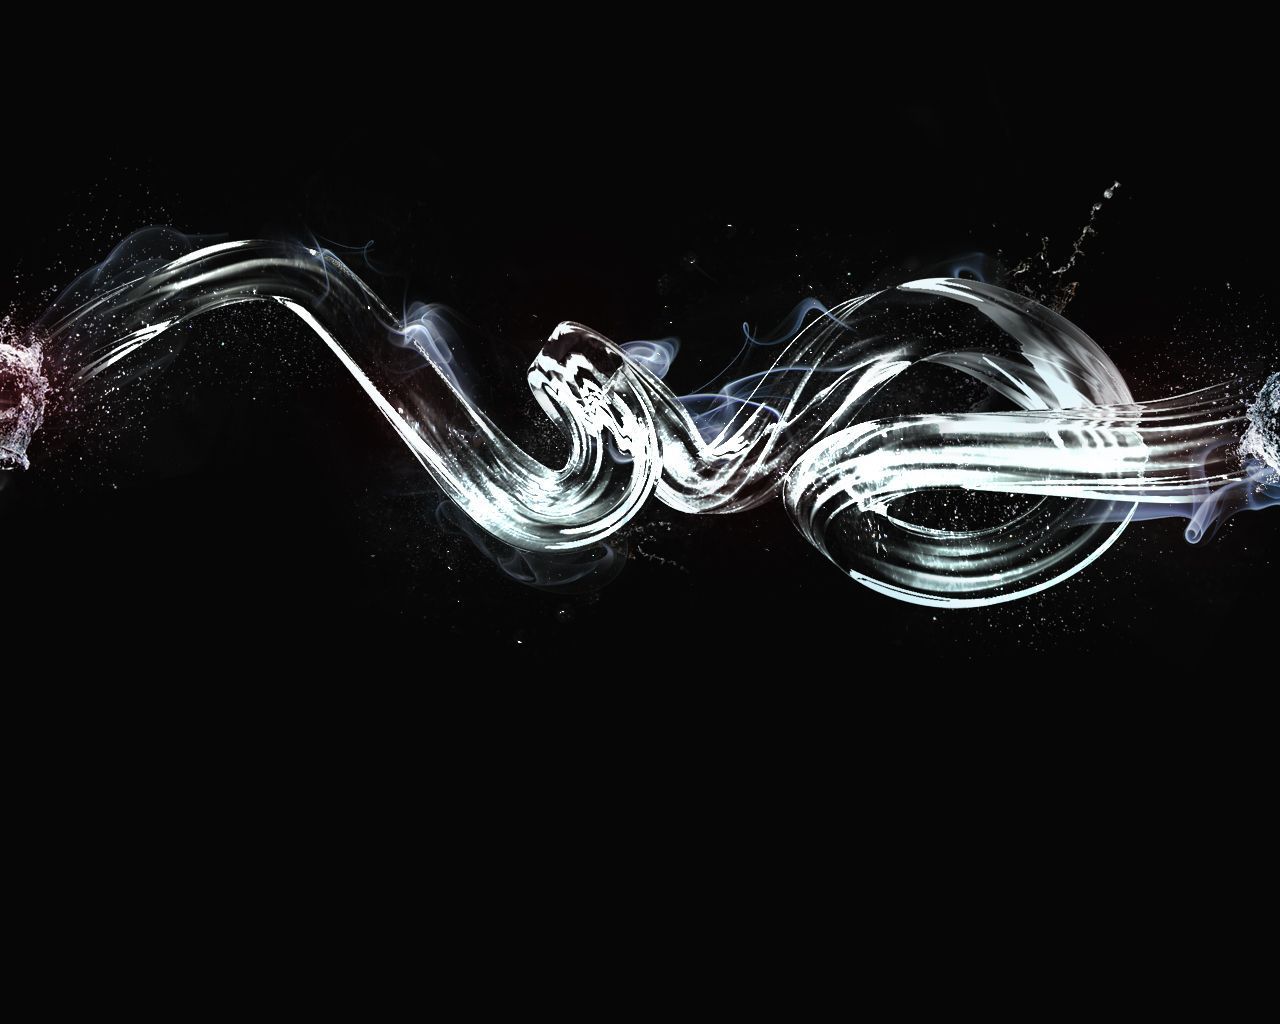 Free Desktop Wallpaper: Smoke On The Water | @designshard